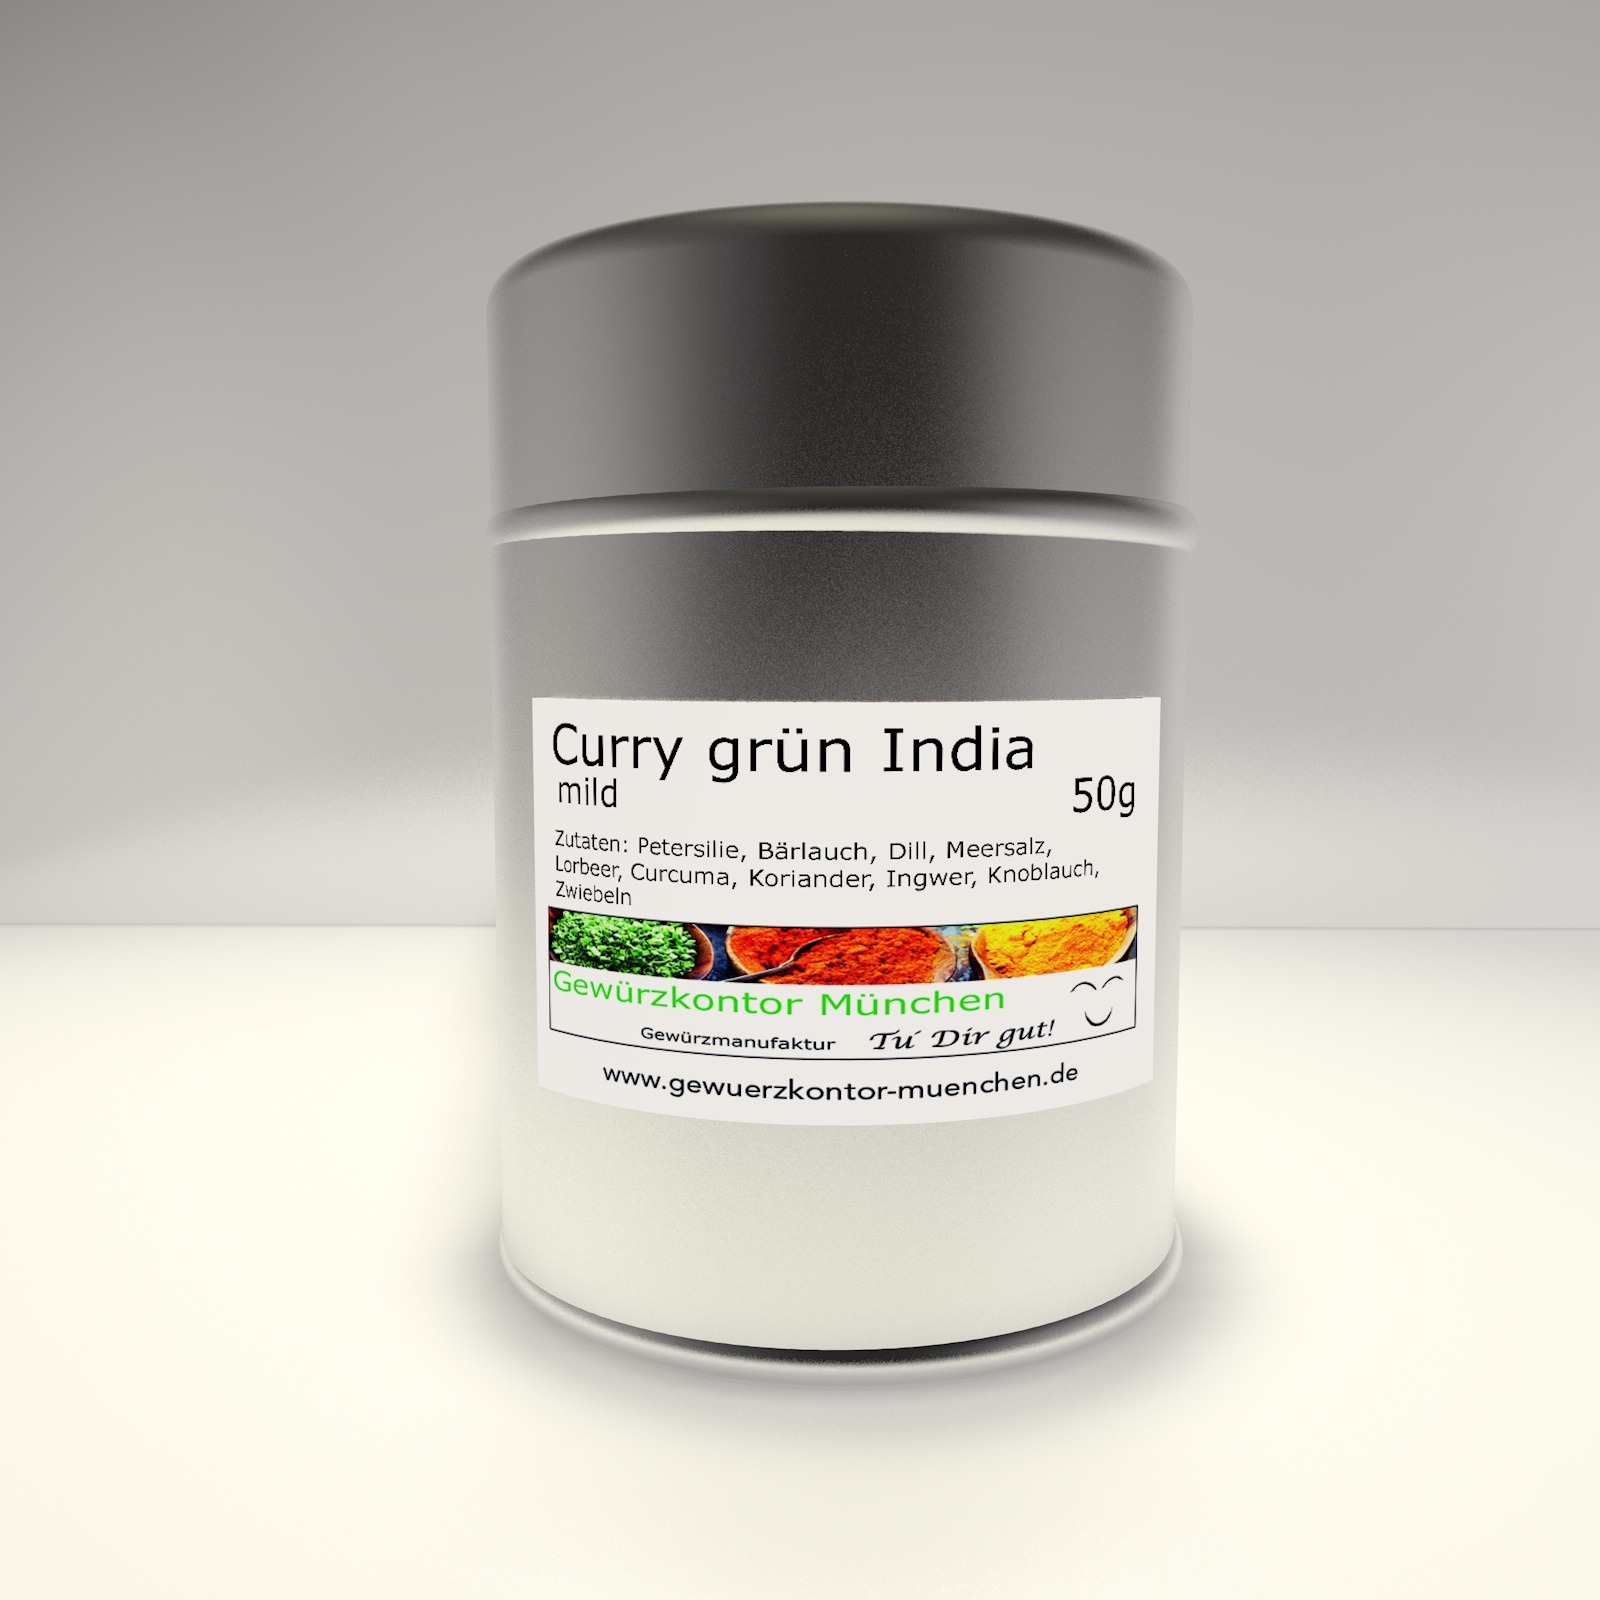 Curry grün India mild 50g im Streuer